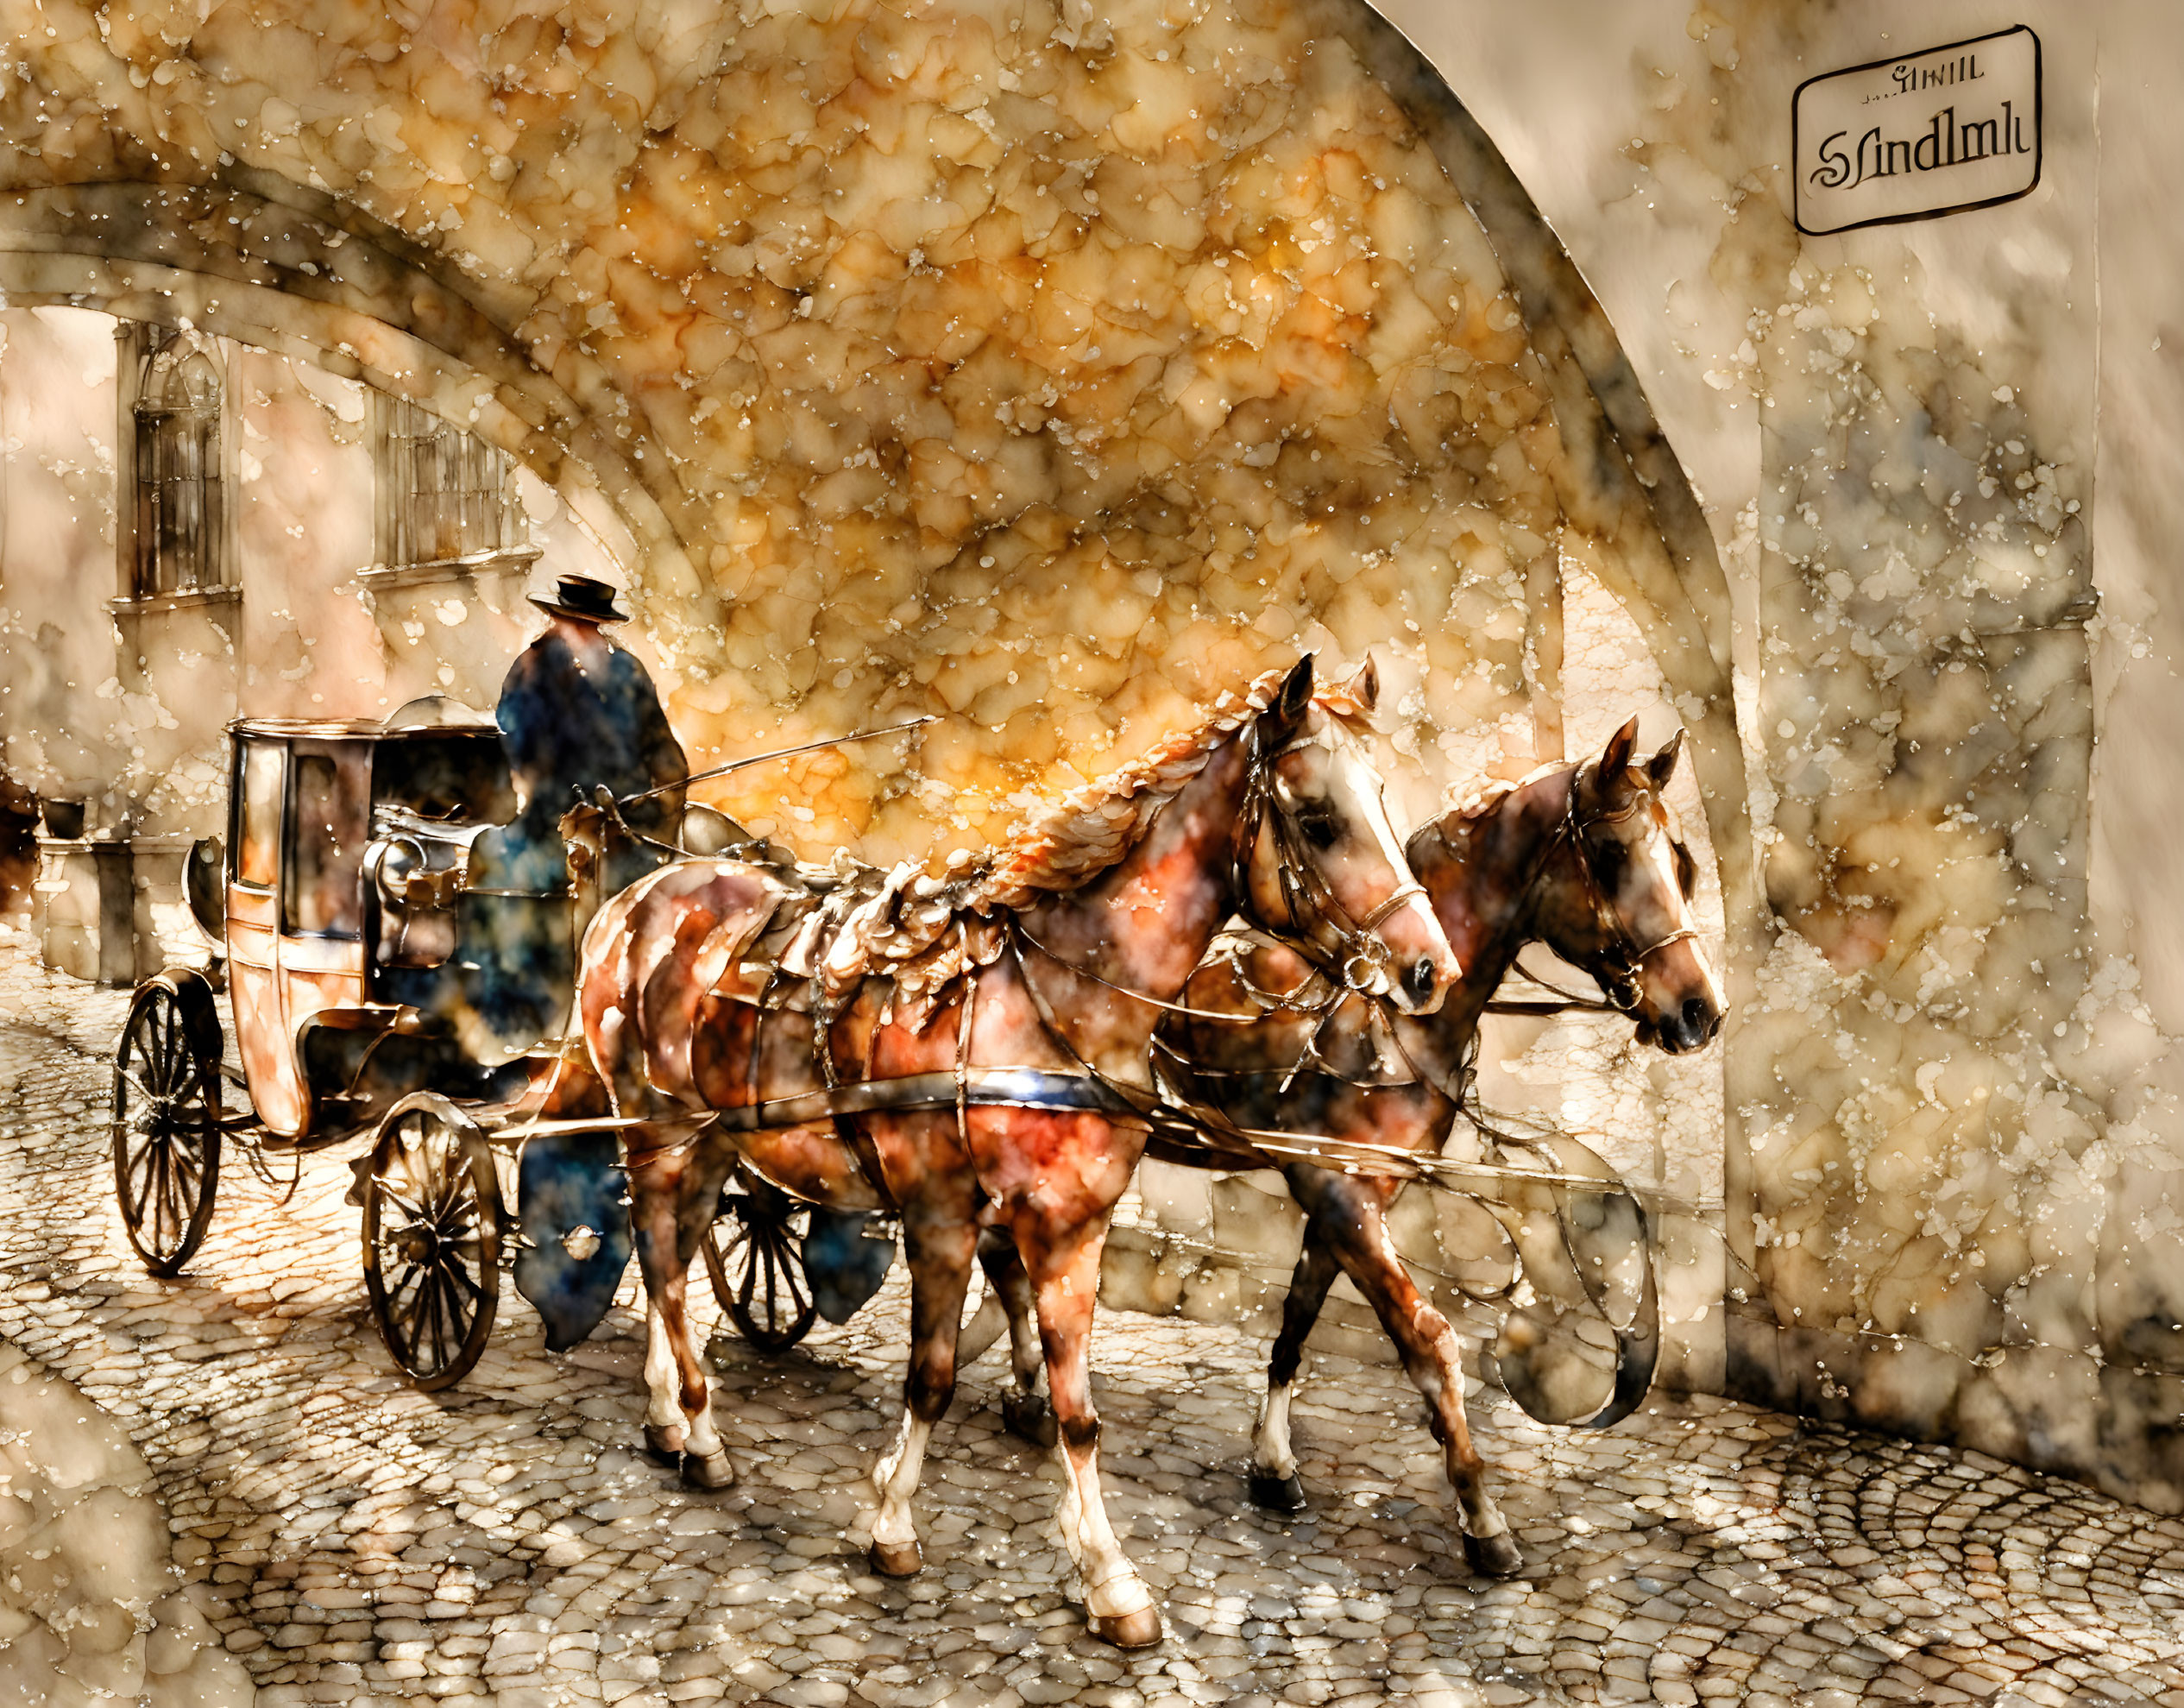 Horse-drawn carriage in an eastern European town